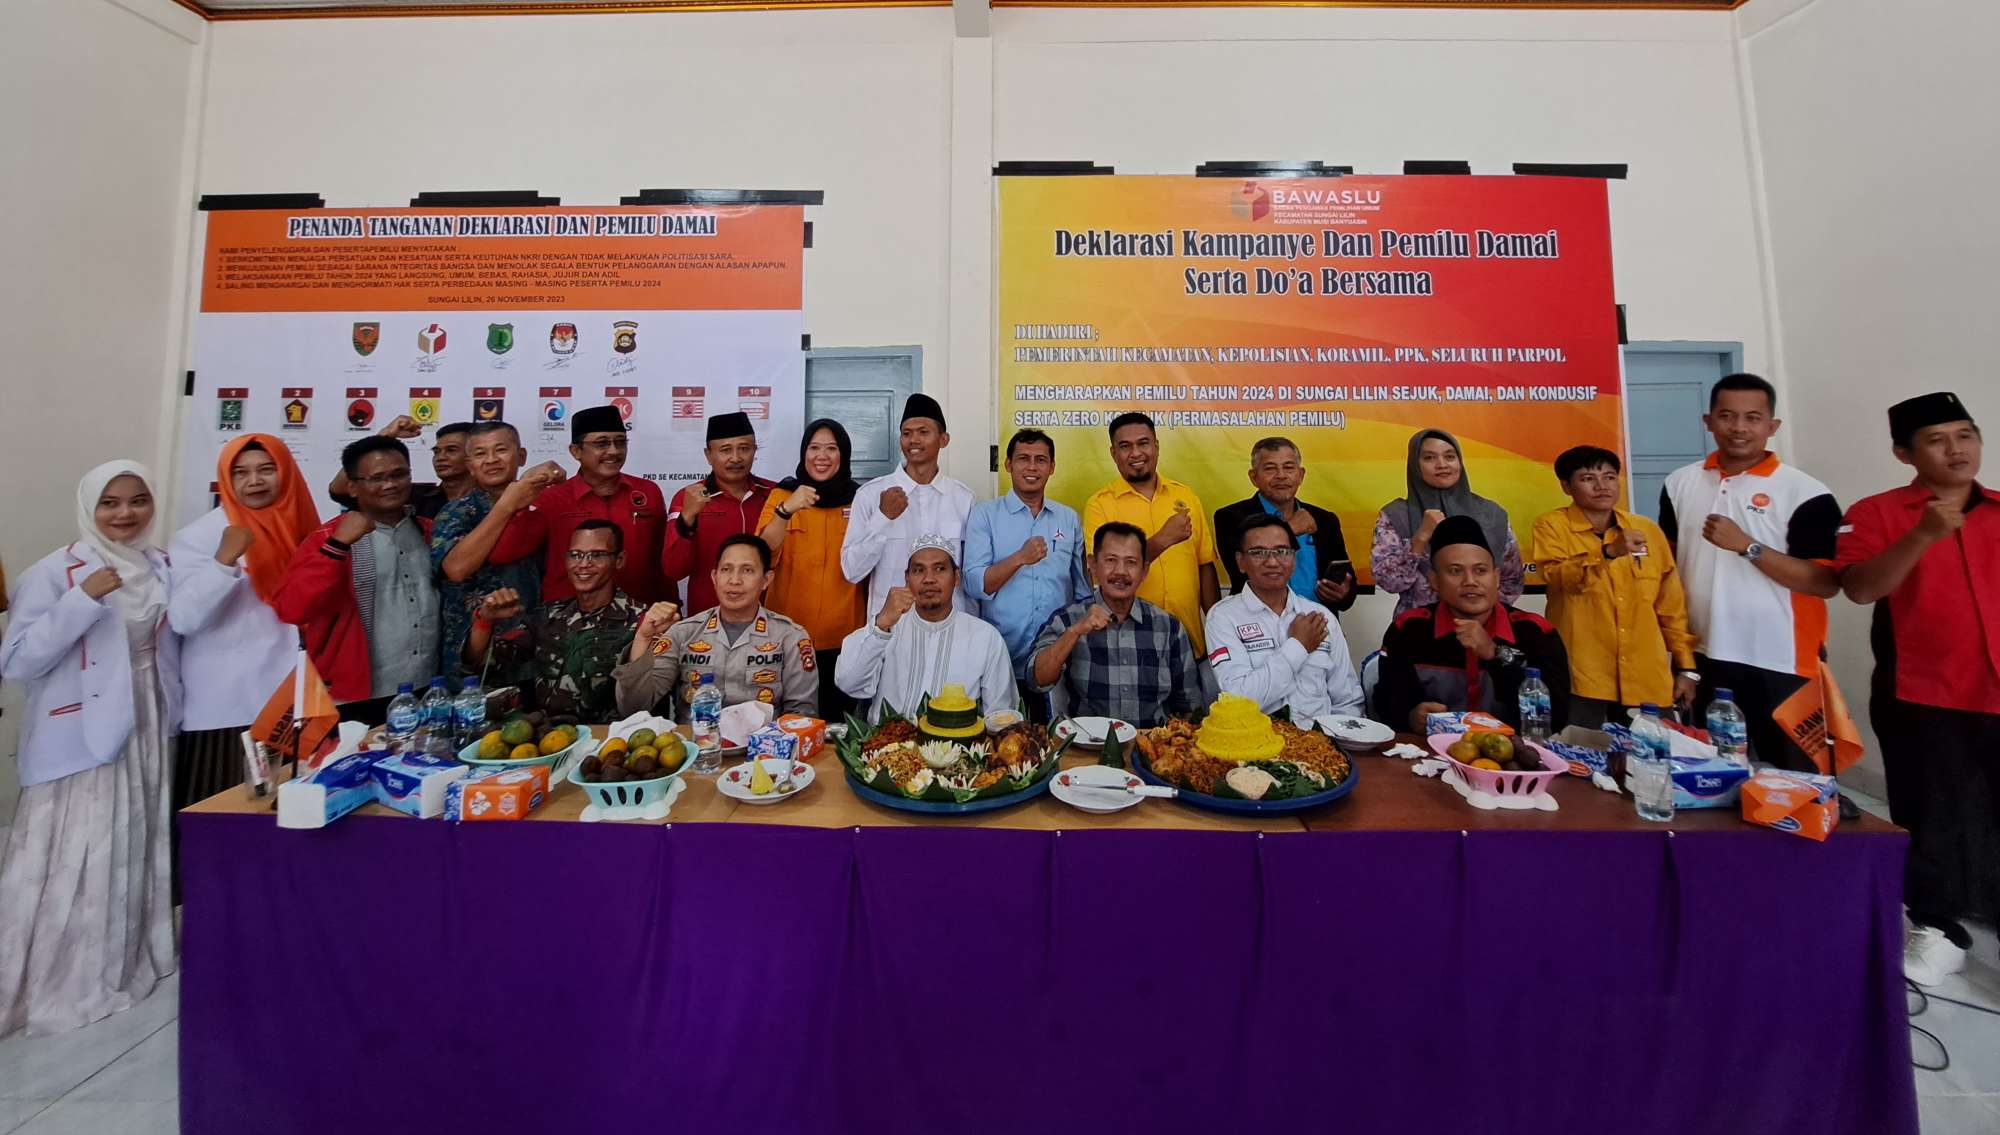 Panwaslu Kecamatan Sungai Lilin Gelar Deklarasi Kampanye dan Pemilu Damai